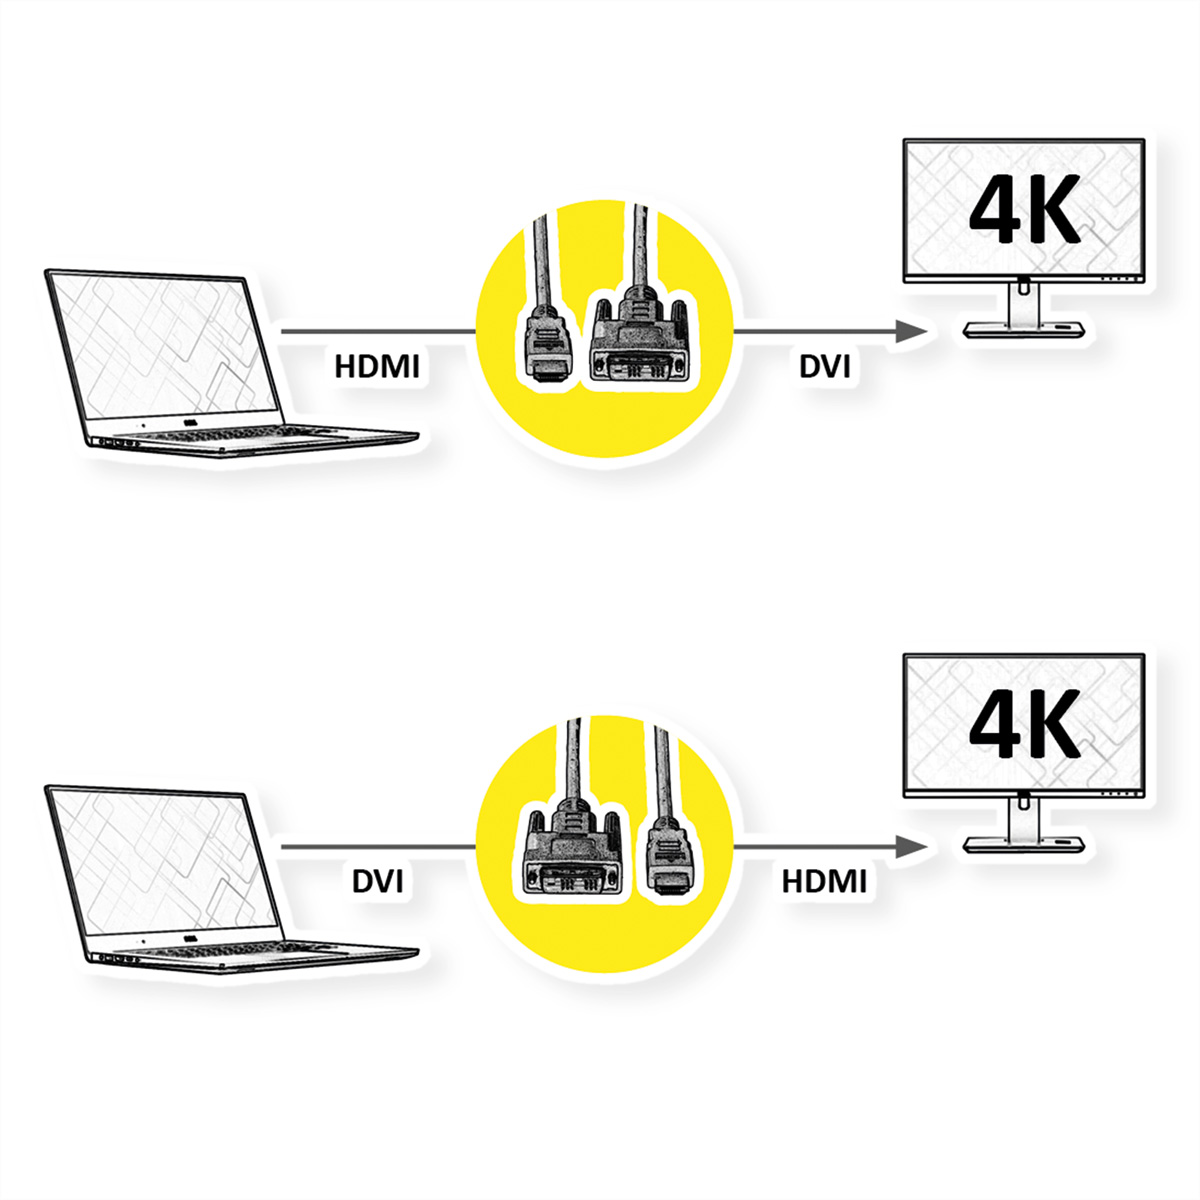 ROLINE Monitorkabel DVI (24+1) HDMI, m 2 ST/ST, HDMI-DVI-Kabel, 